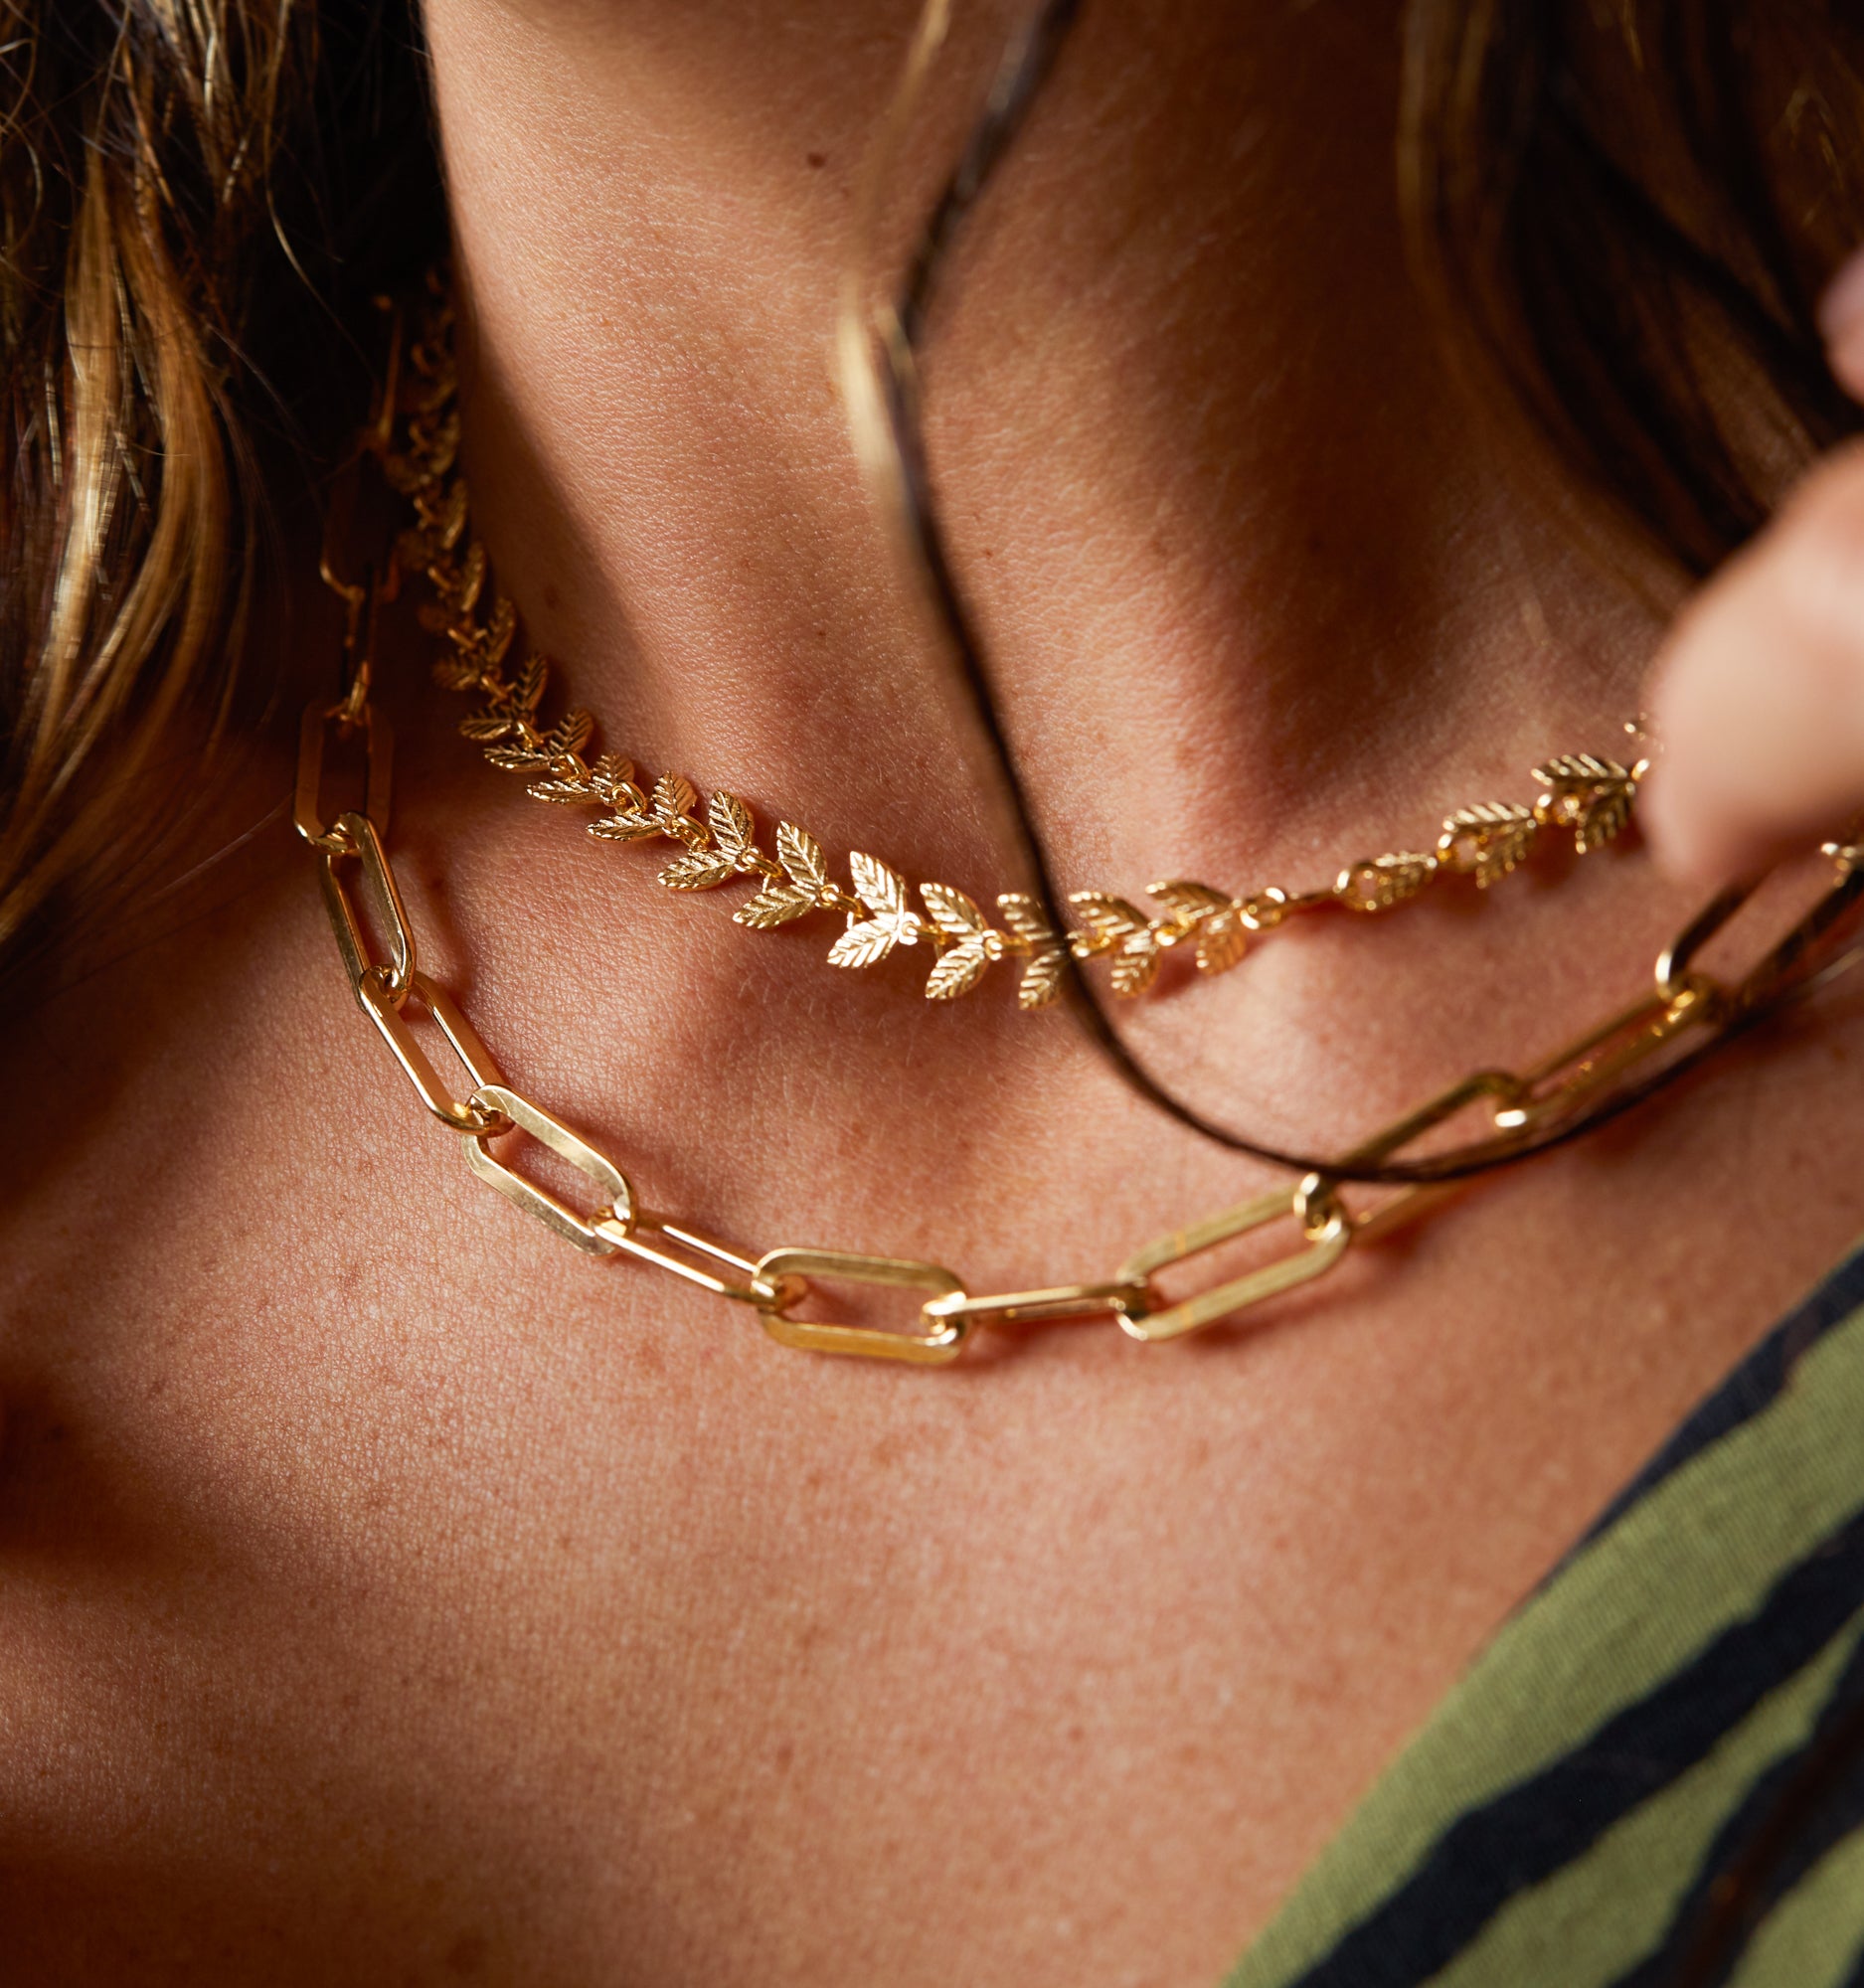 Laurel Chain Necklace